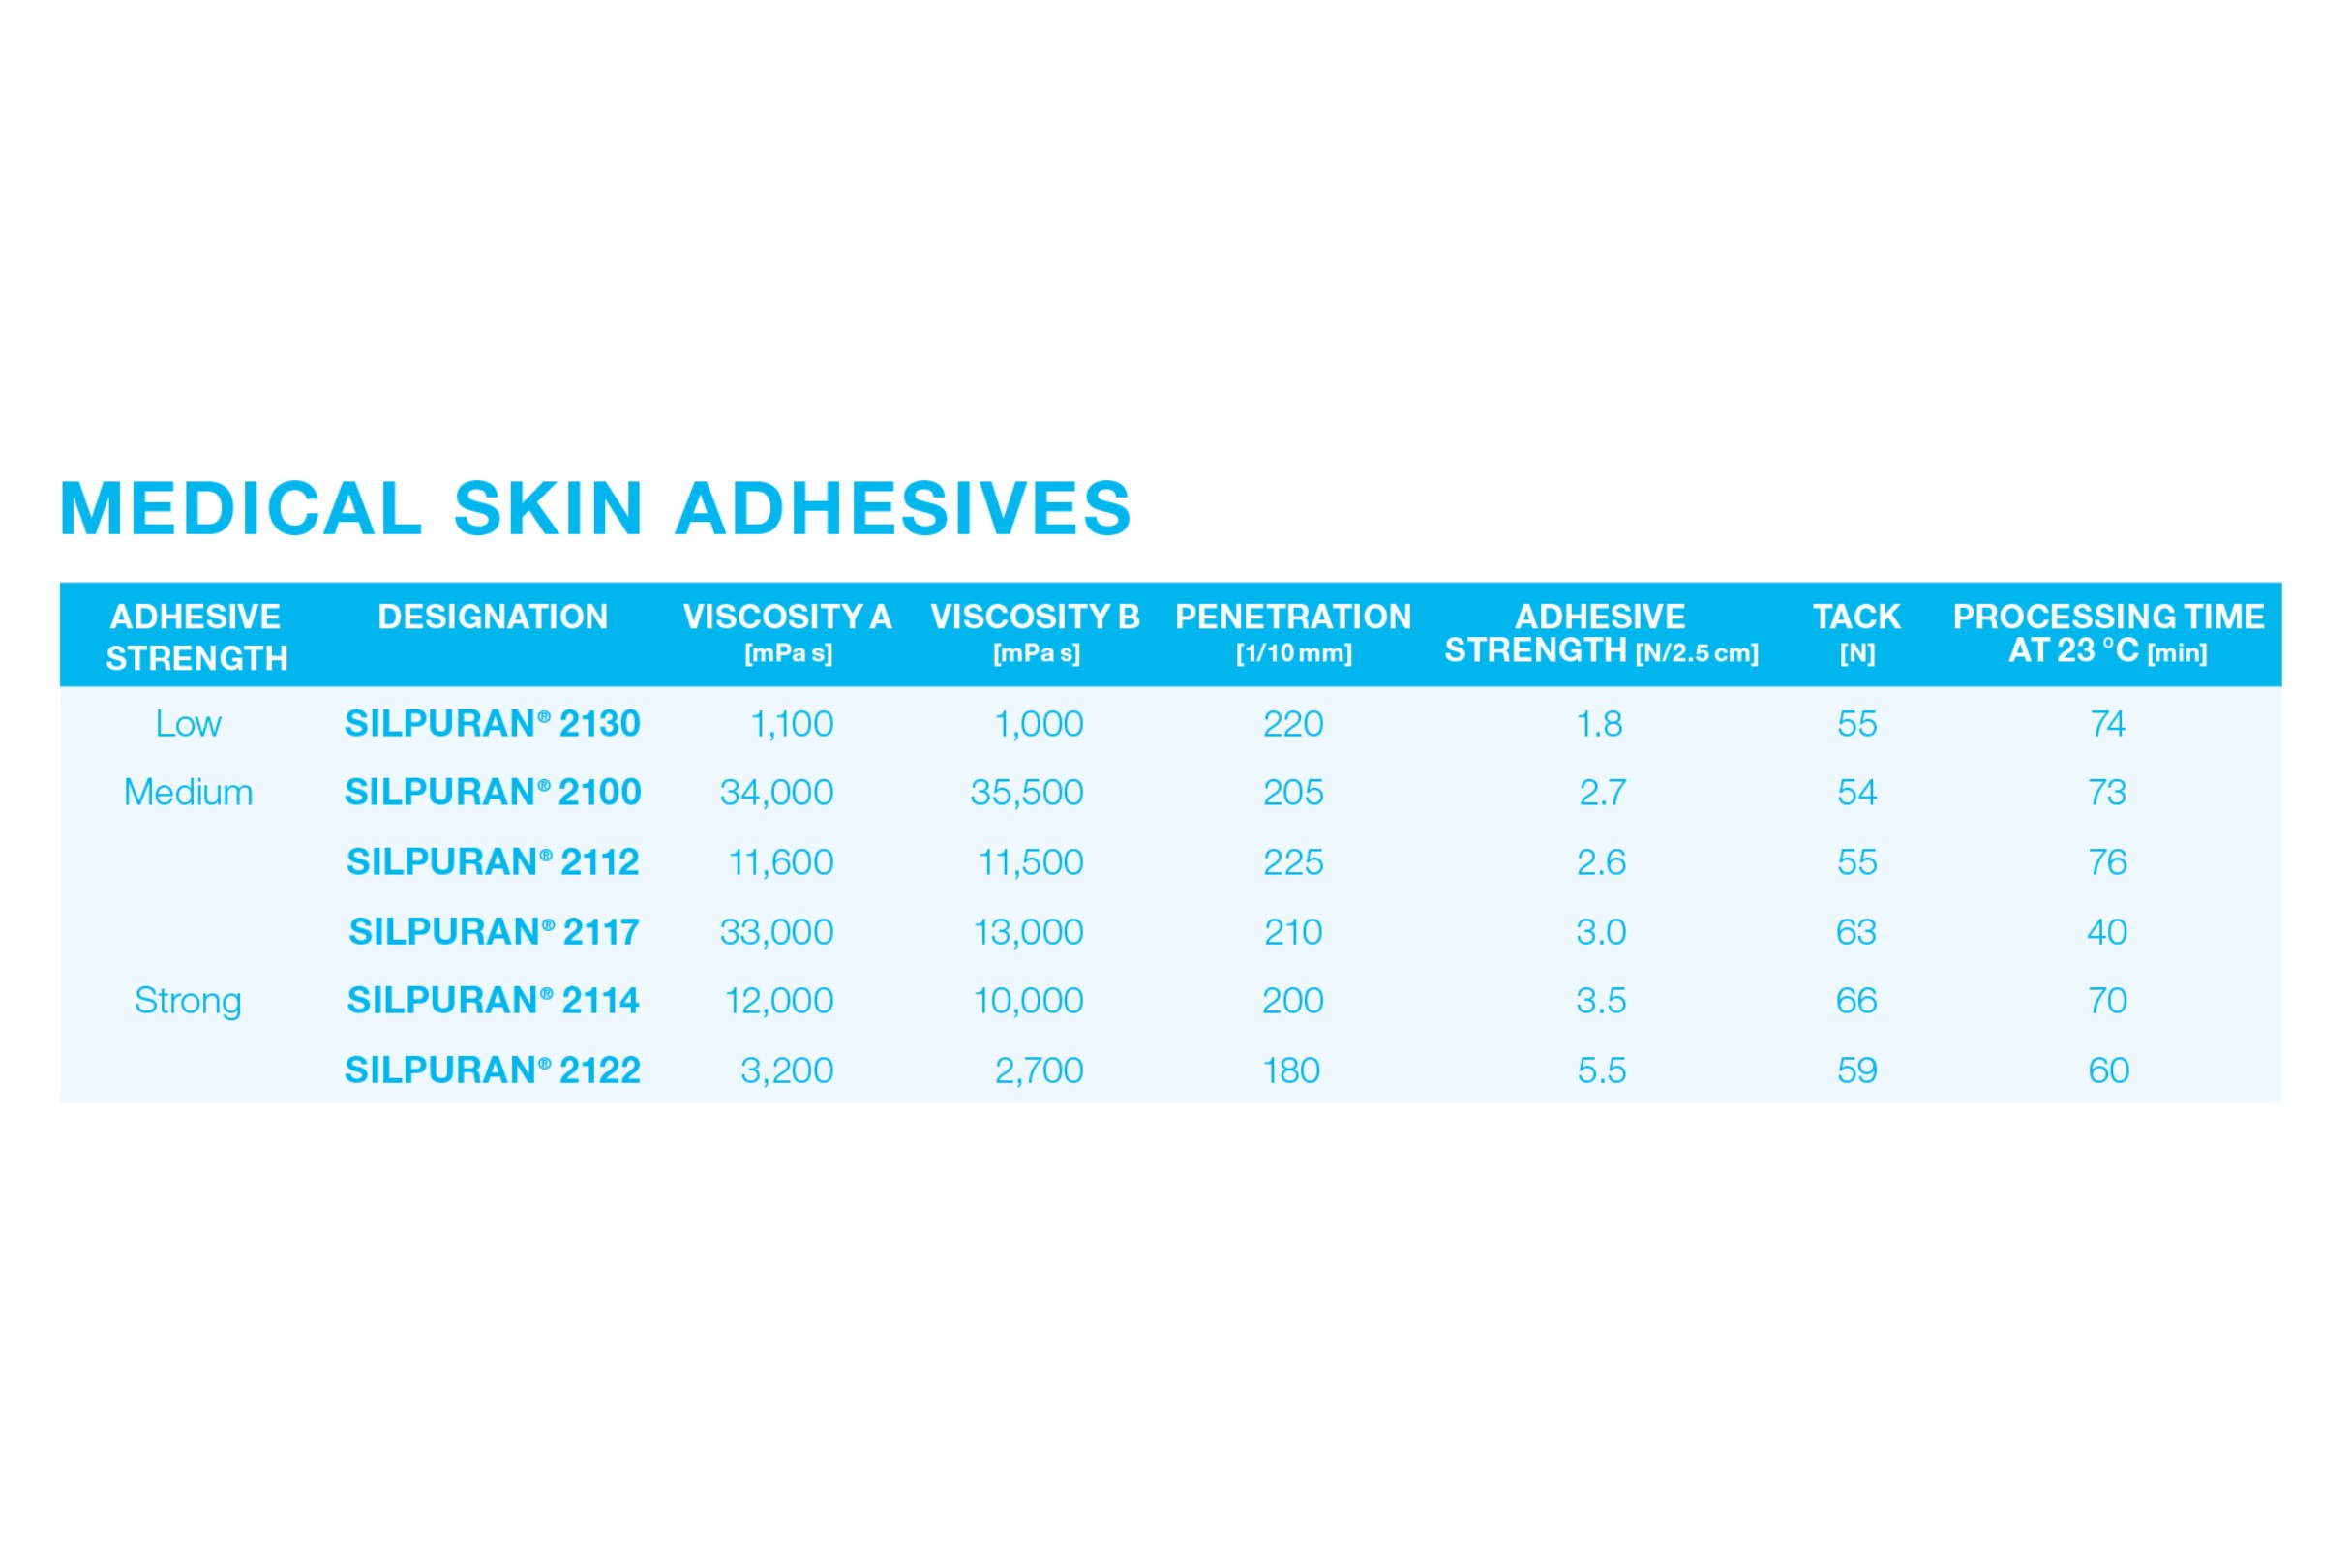 Medical skin adhesives